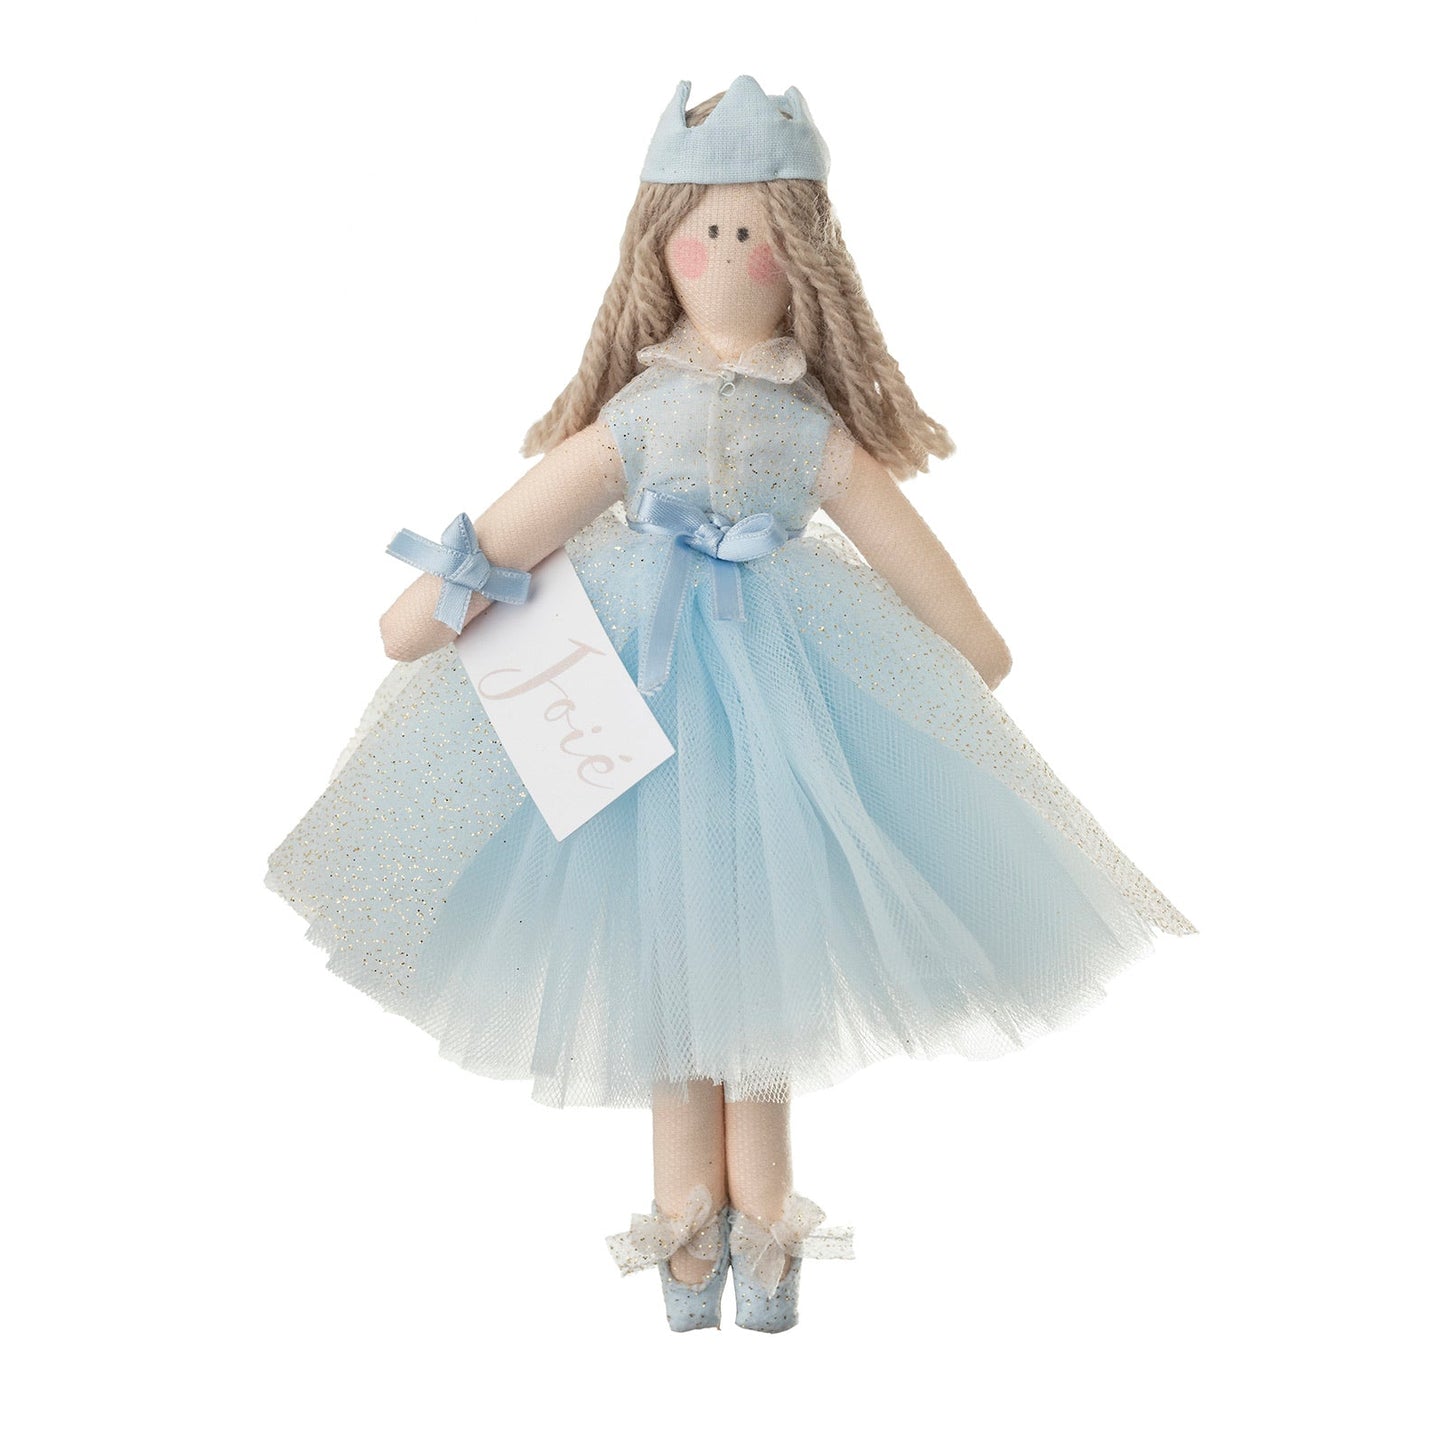 Bambola “Elizabeth” in organza glitterata - 21cm / Azzurro -